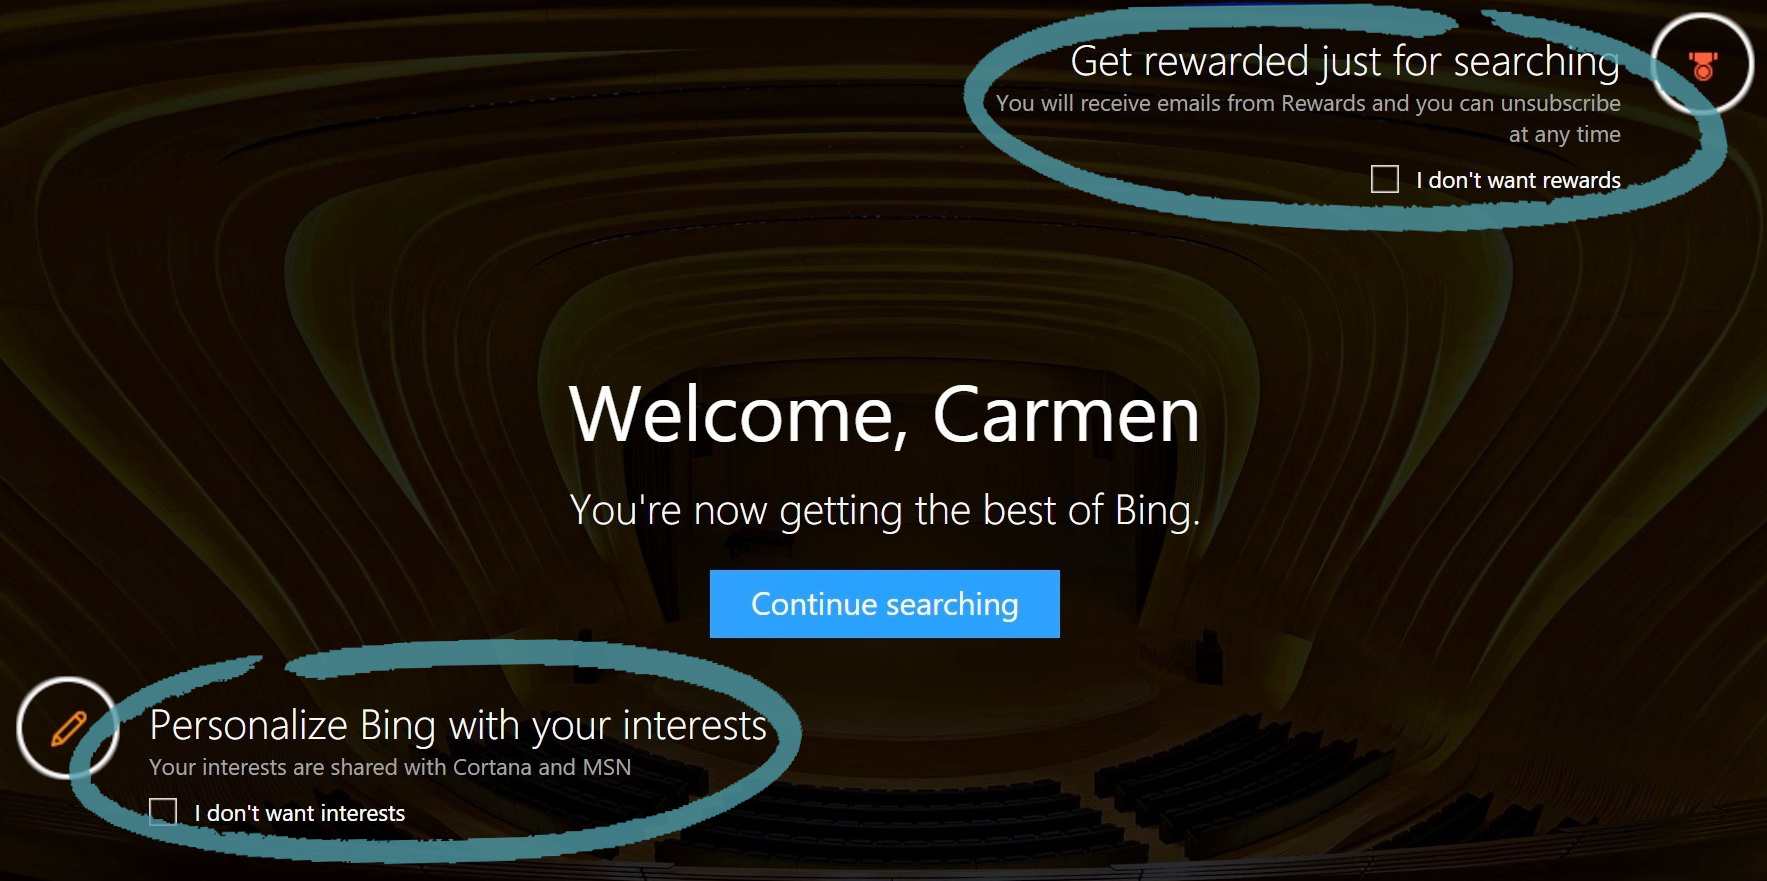 Home page di Bing con le opzioni per iscriversi agli interessi e a Bing Rewards